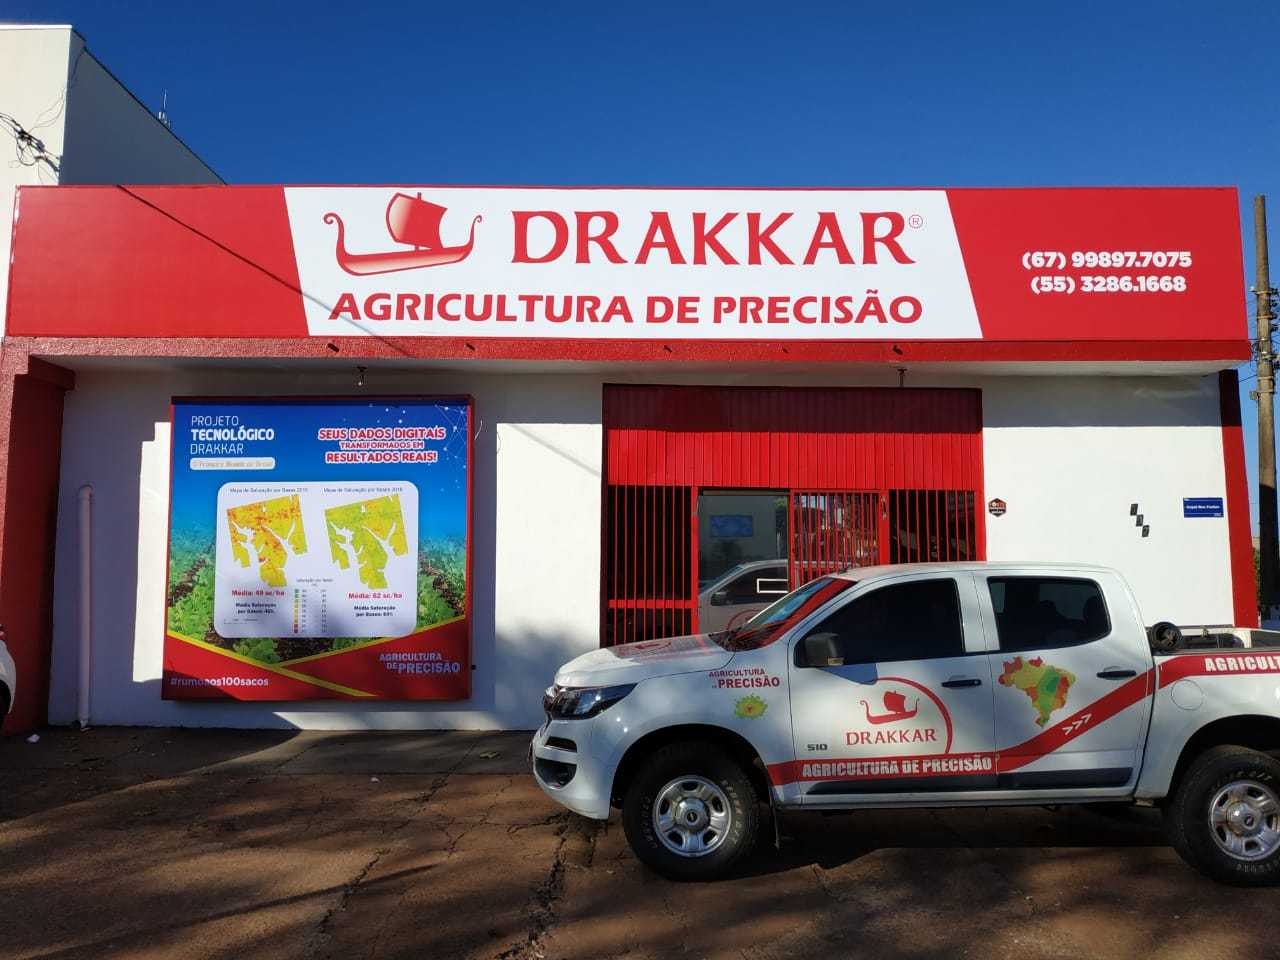 Drakkar - Agricultura de Precisão - NOTÍCIAS - Em live sobre